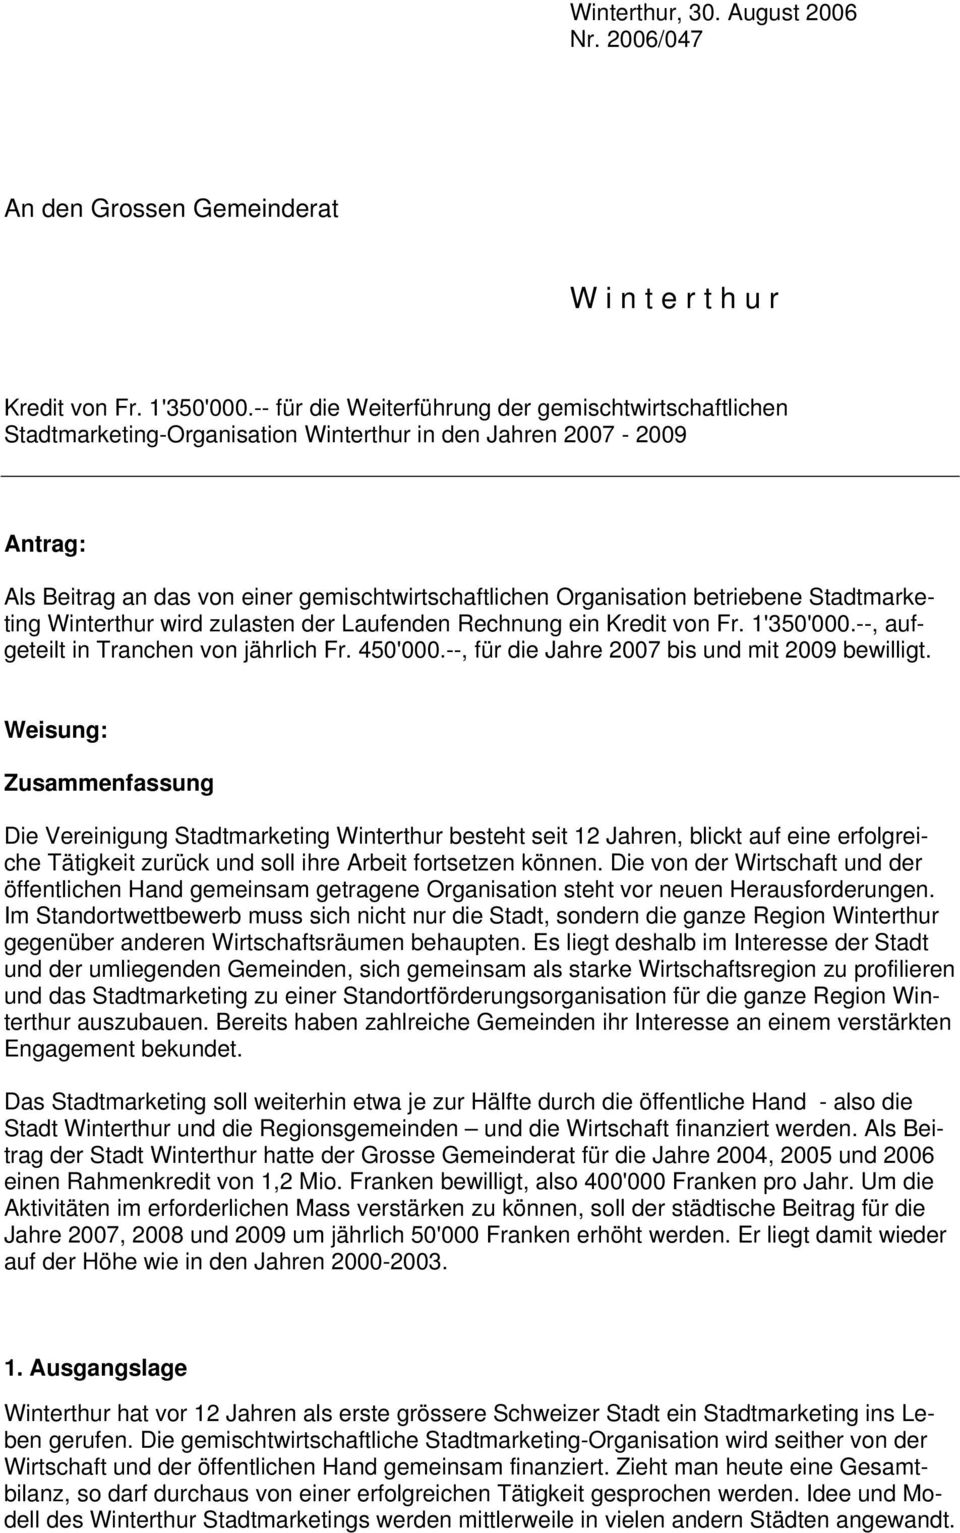 betriebene Stadtmarketing Winterthur wird zulasten der Laufenden Rechnung ein Kredit von Fr. 1'350'000.--, aufgeteilt in Tranchen von jährlich Fr. 450'000.